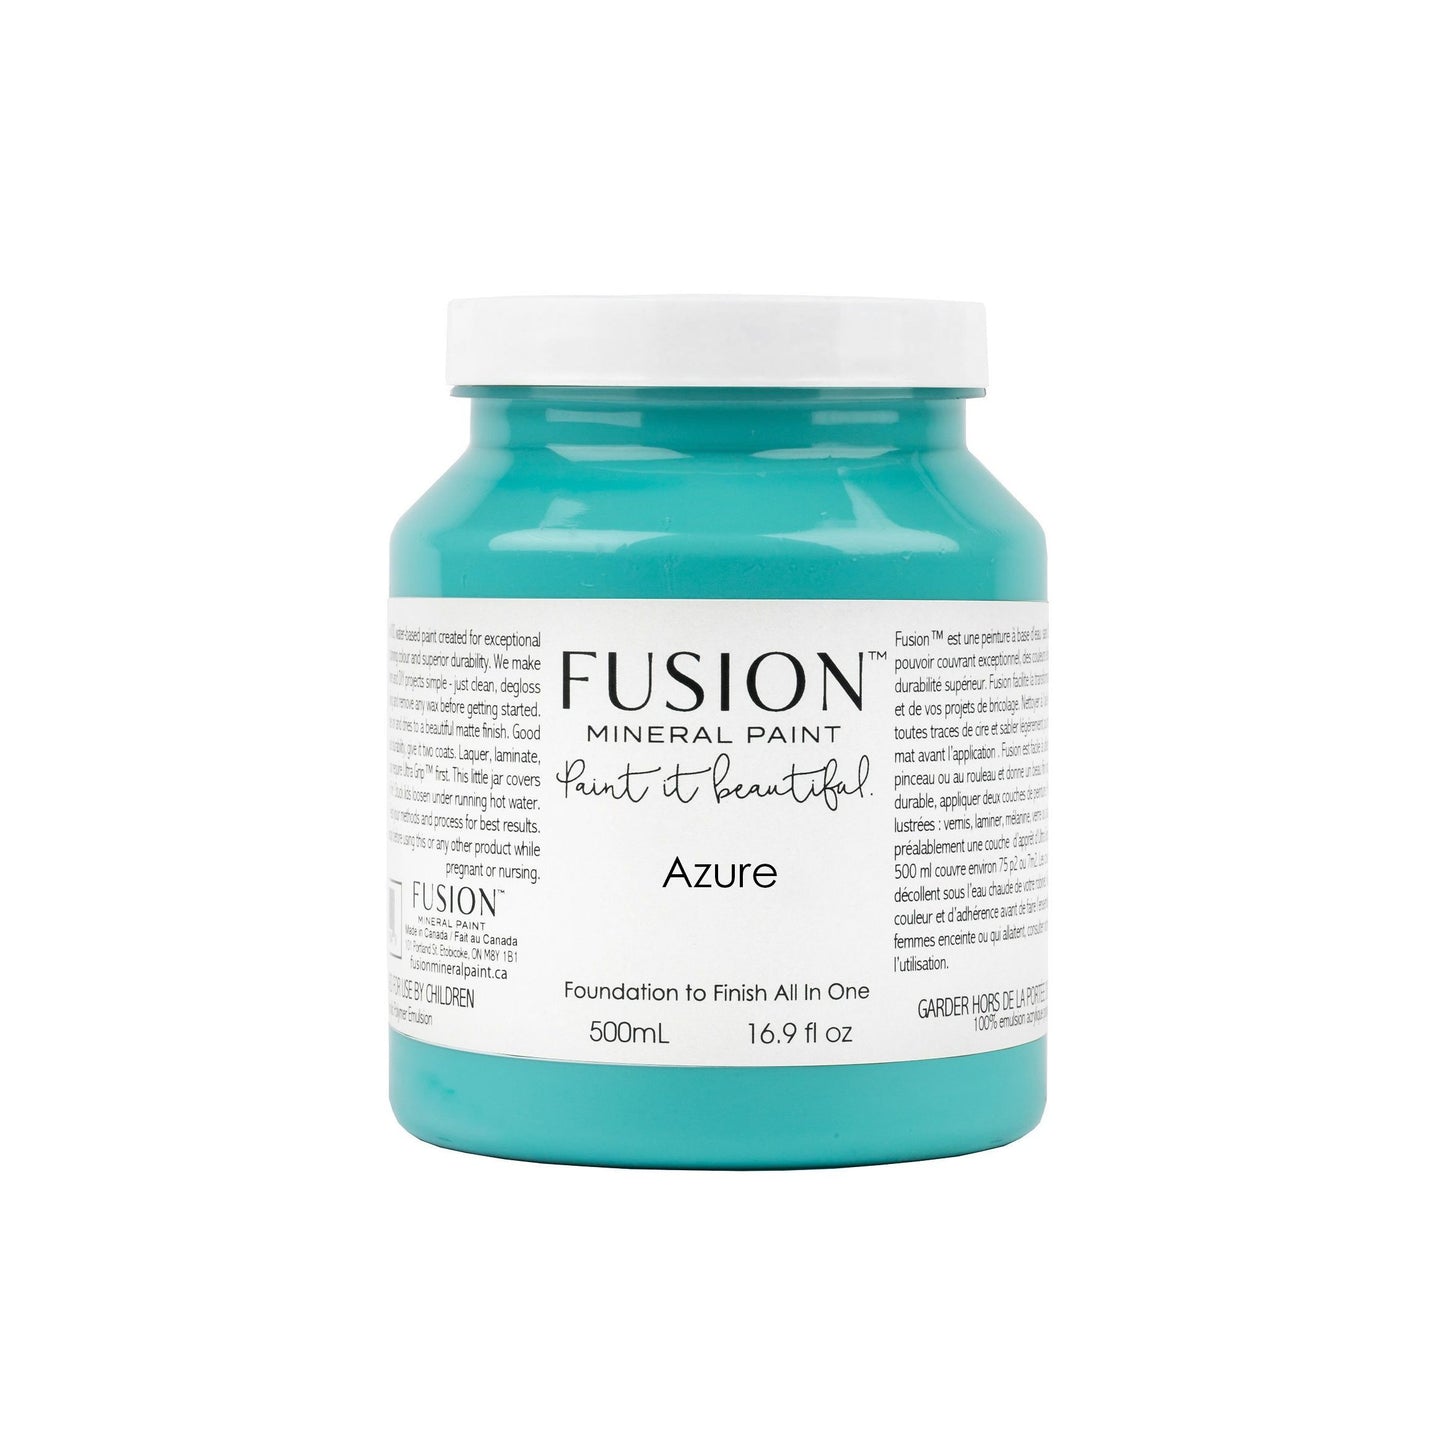 Azure - Fusion Mineral Paint Paint > Fusion Mineral Paint > Furniture Paint